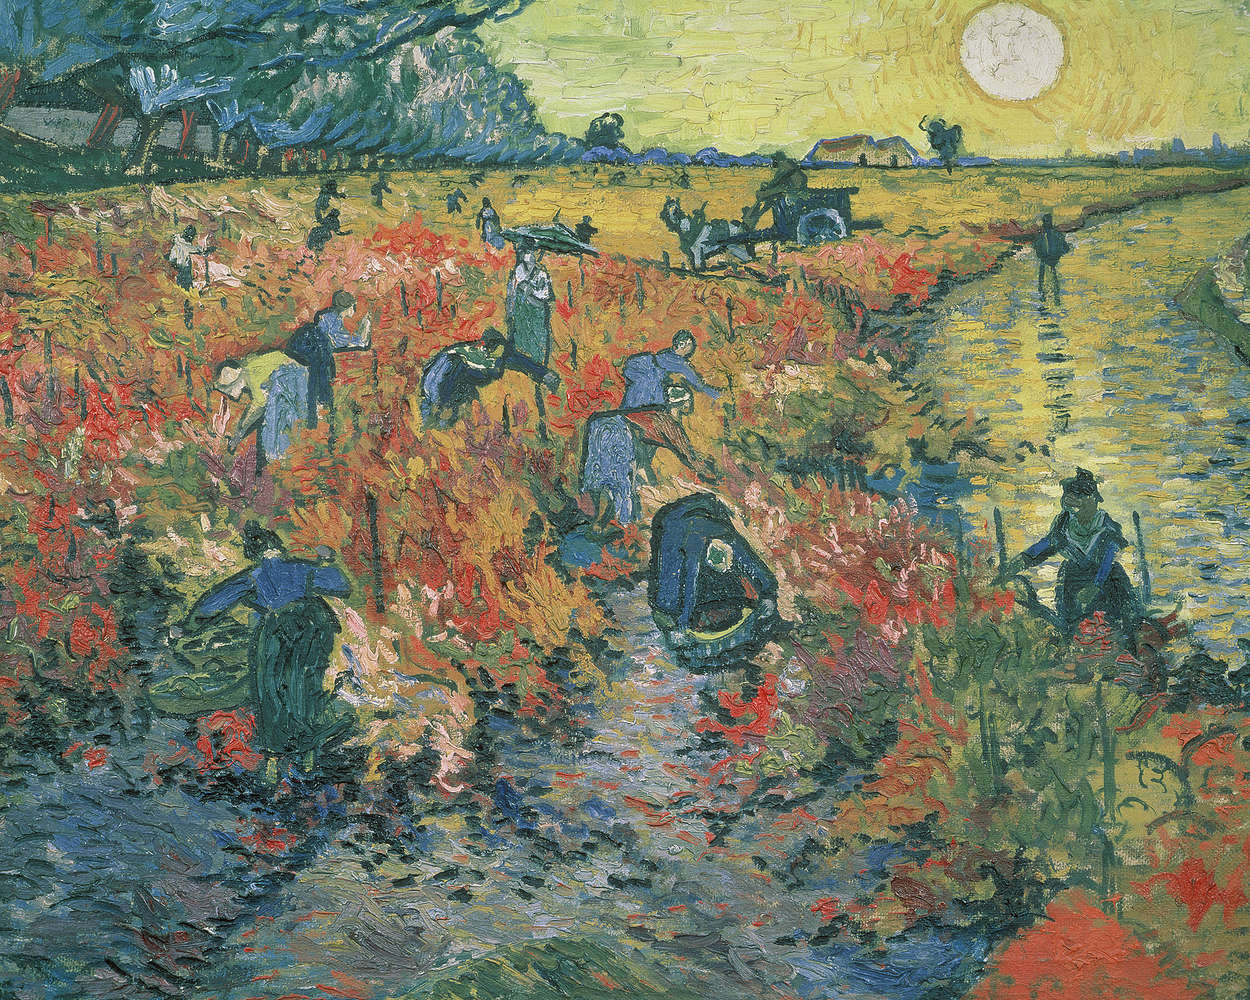             Rode wijngaarden" muurschildering door Vincent van Gogh
        